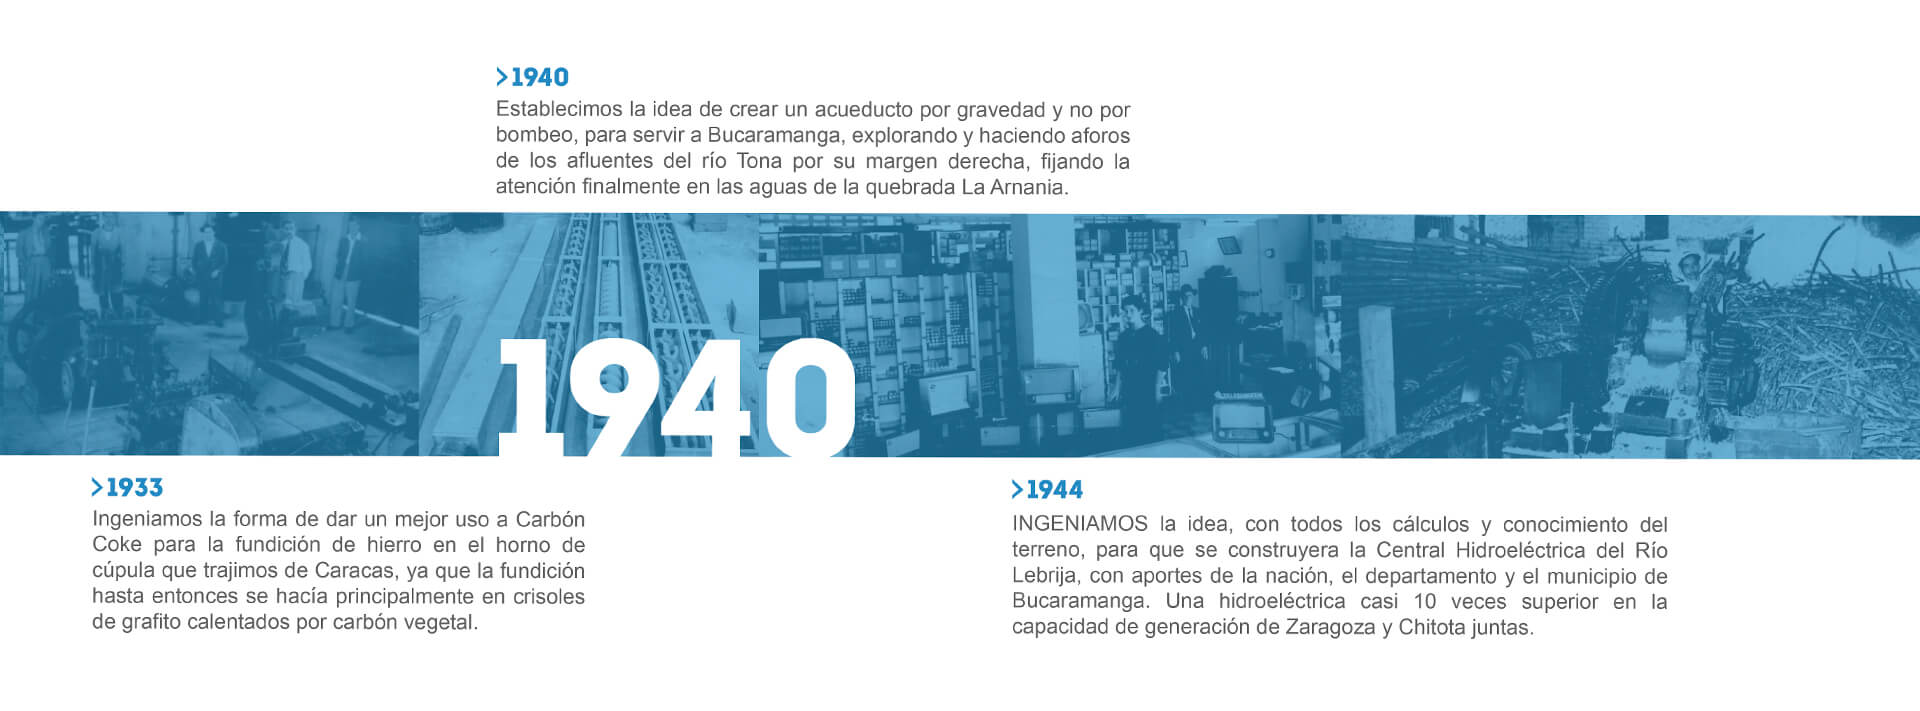 Nuestra historia - Penagos 1870 a 1900